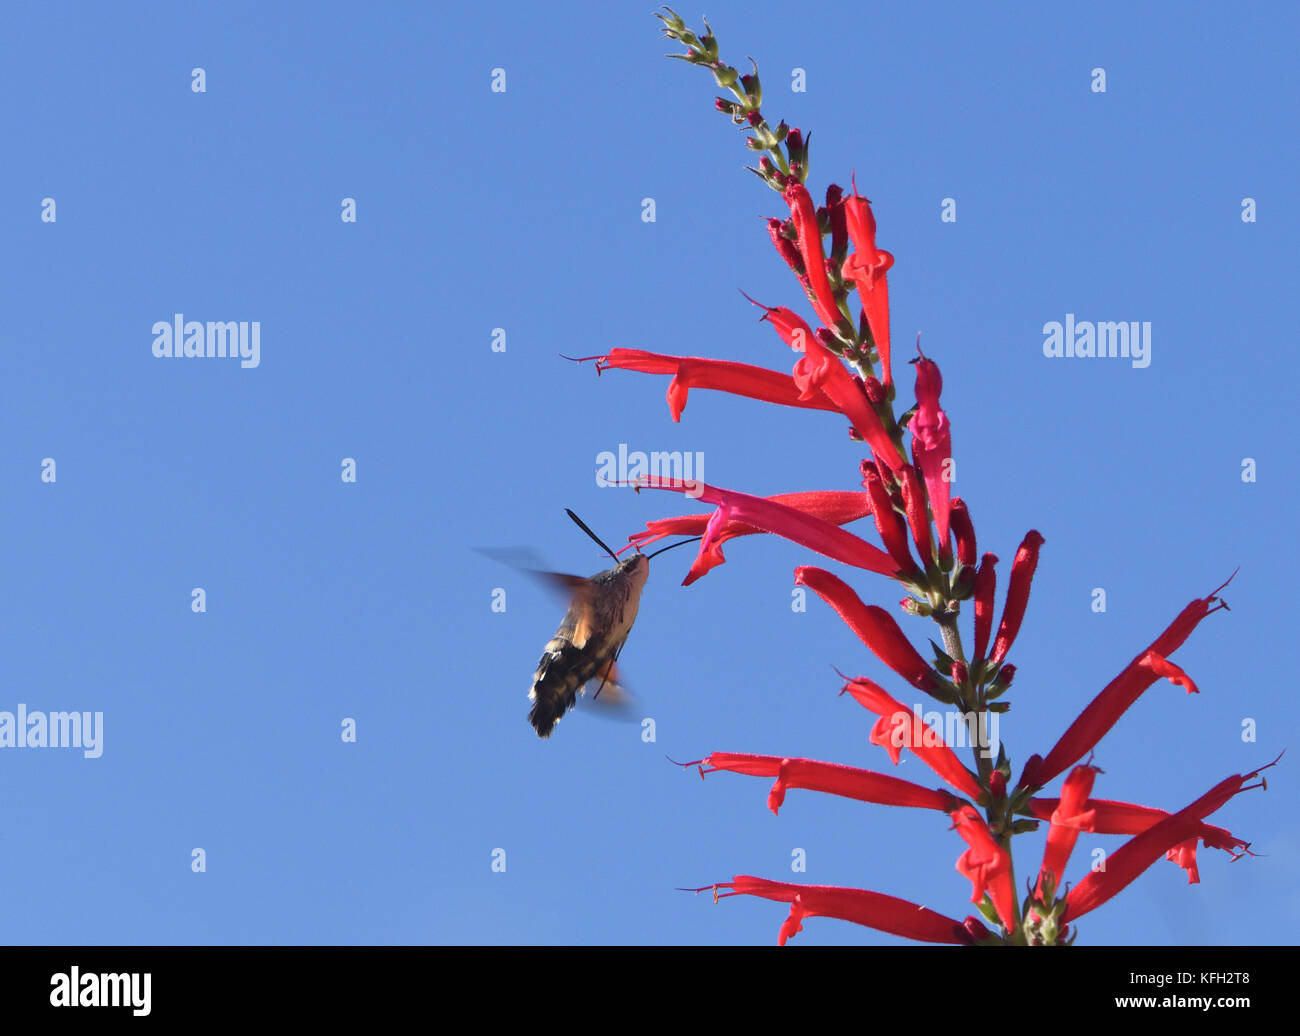 Un sphynx colibri (Macroglossum stellatarum) plane tout en se nourrissant de nectar de fleurs tubulaires rouge salvia. Dartmouth Devon, Royaume-Uni. Banque D'Images